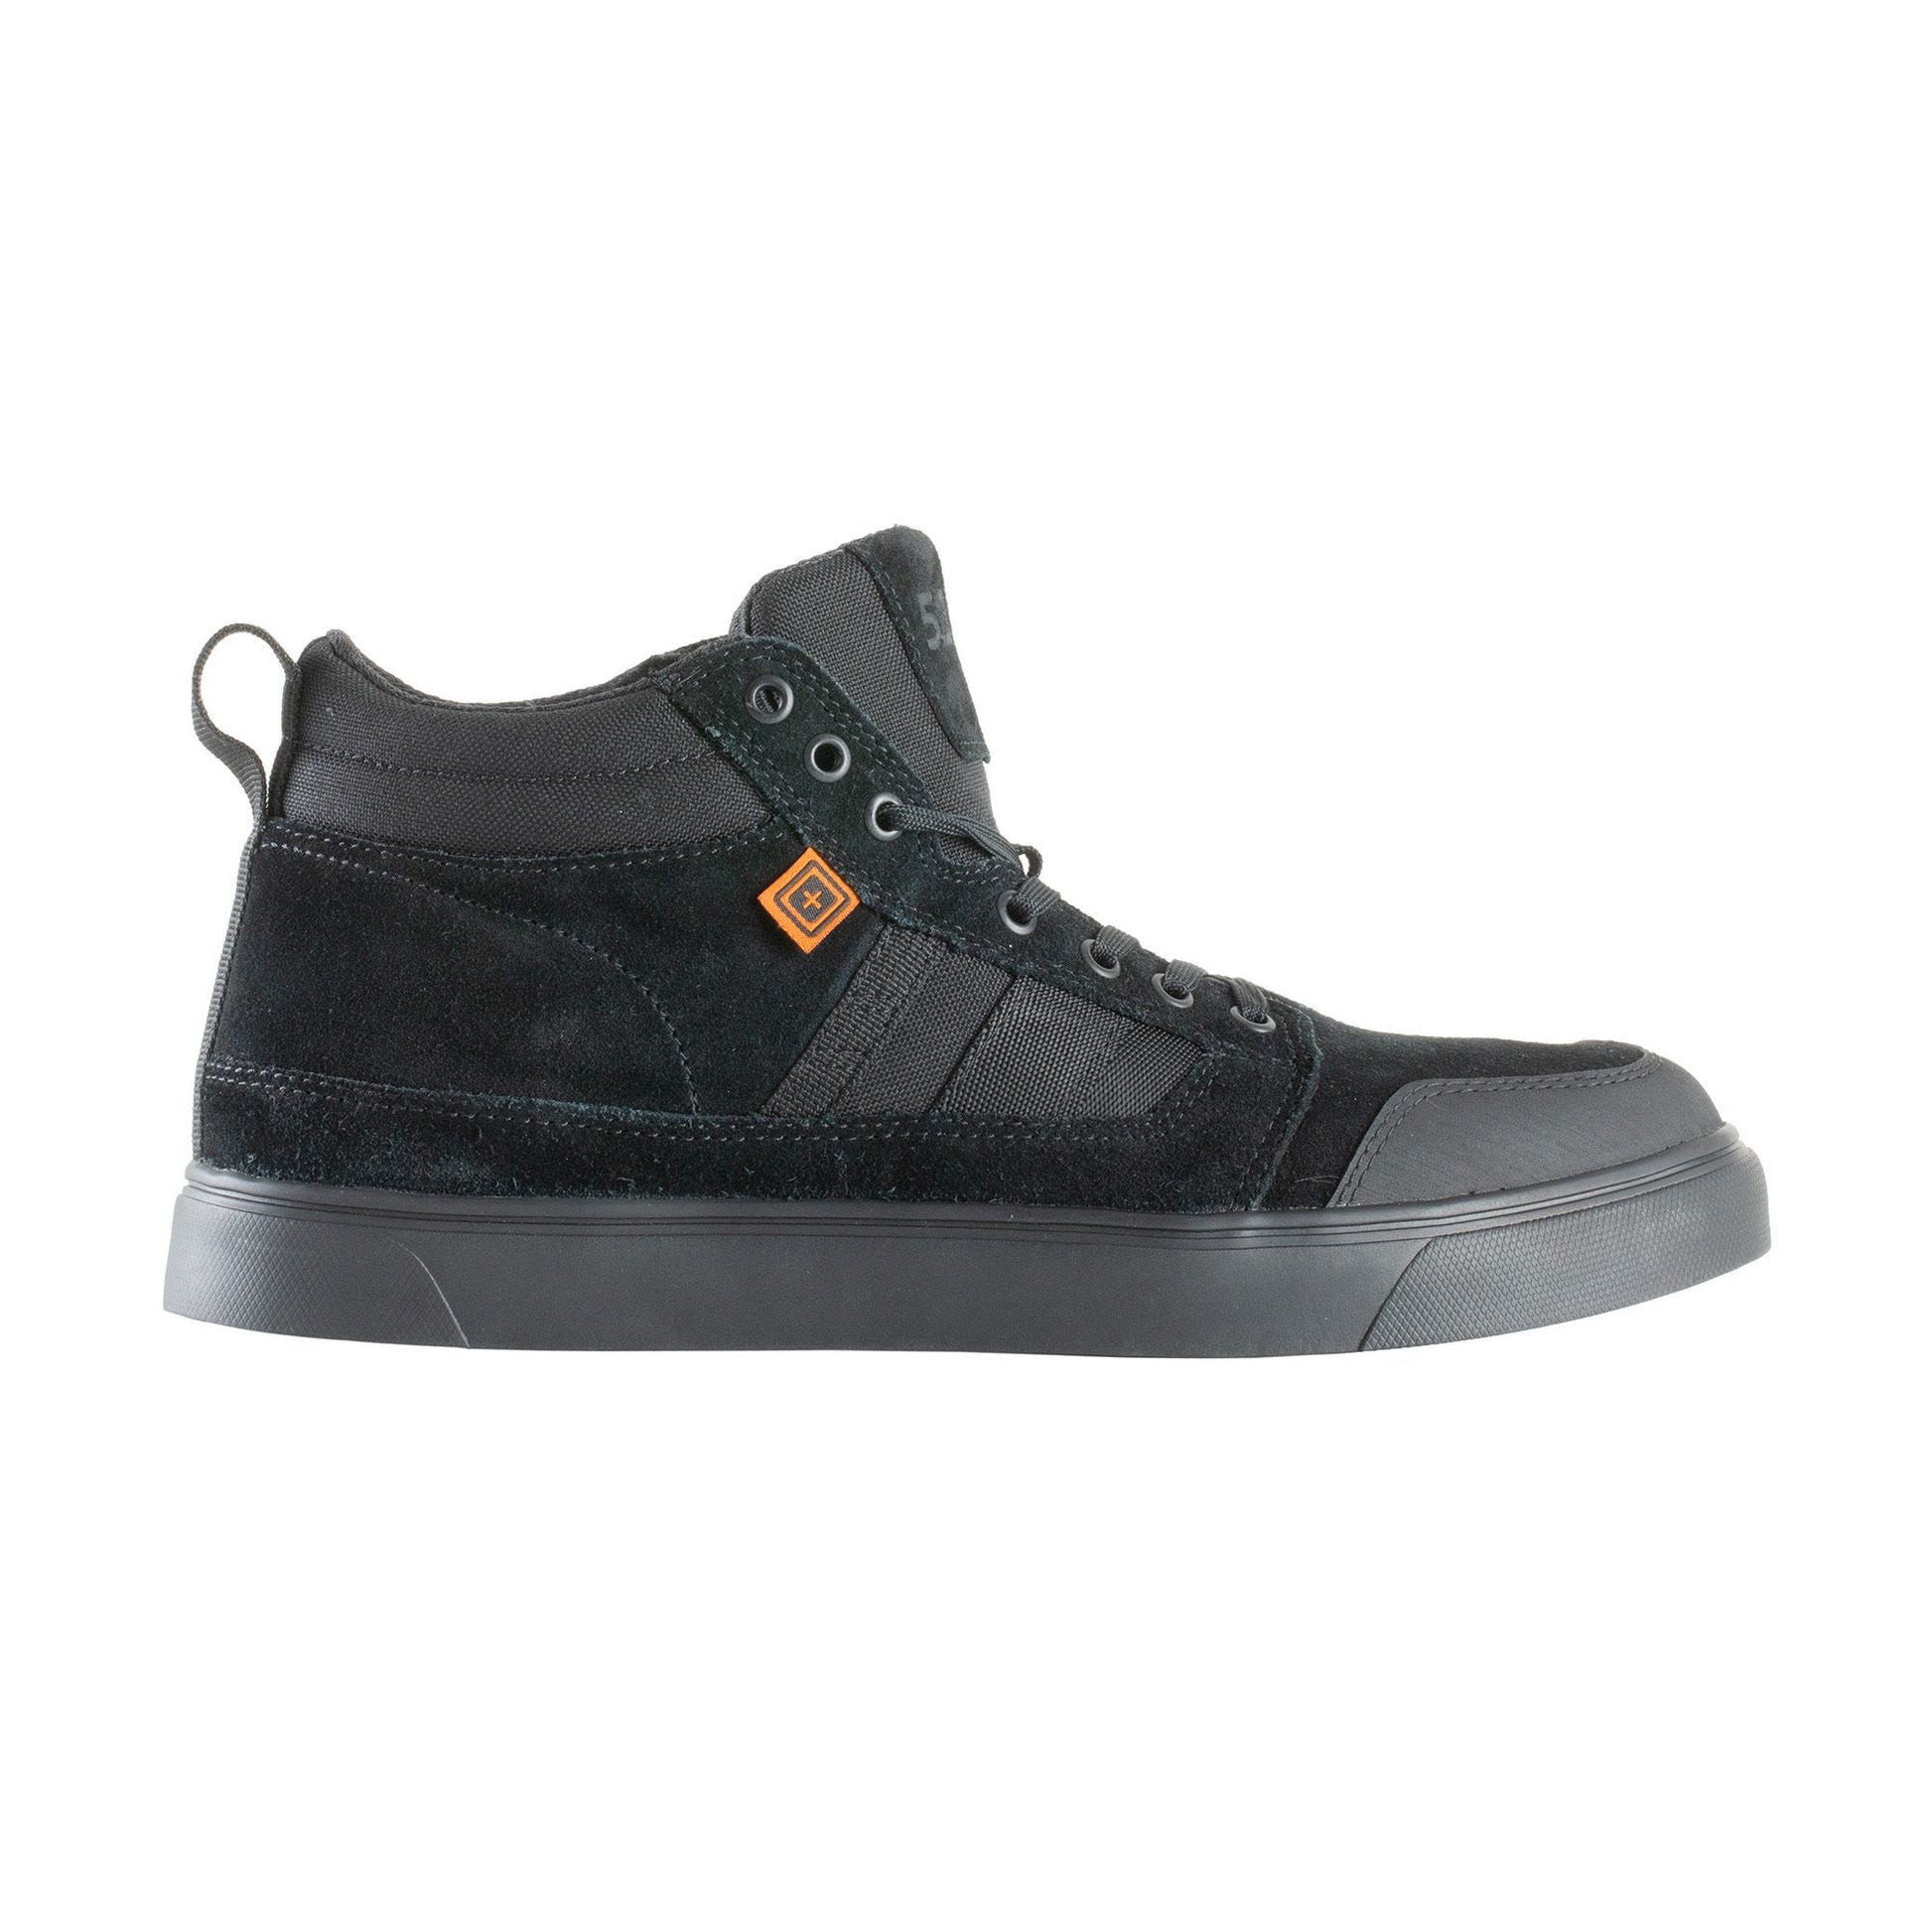 5.11 Tactical Norris Sneaker Black 4 Tactical Distributors Ltd New Zealand